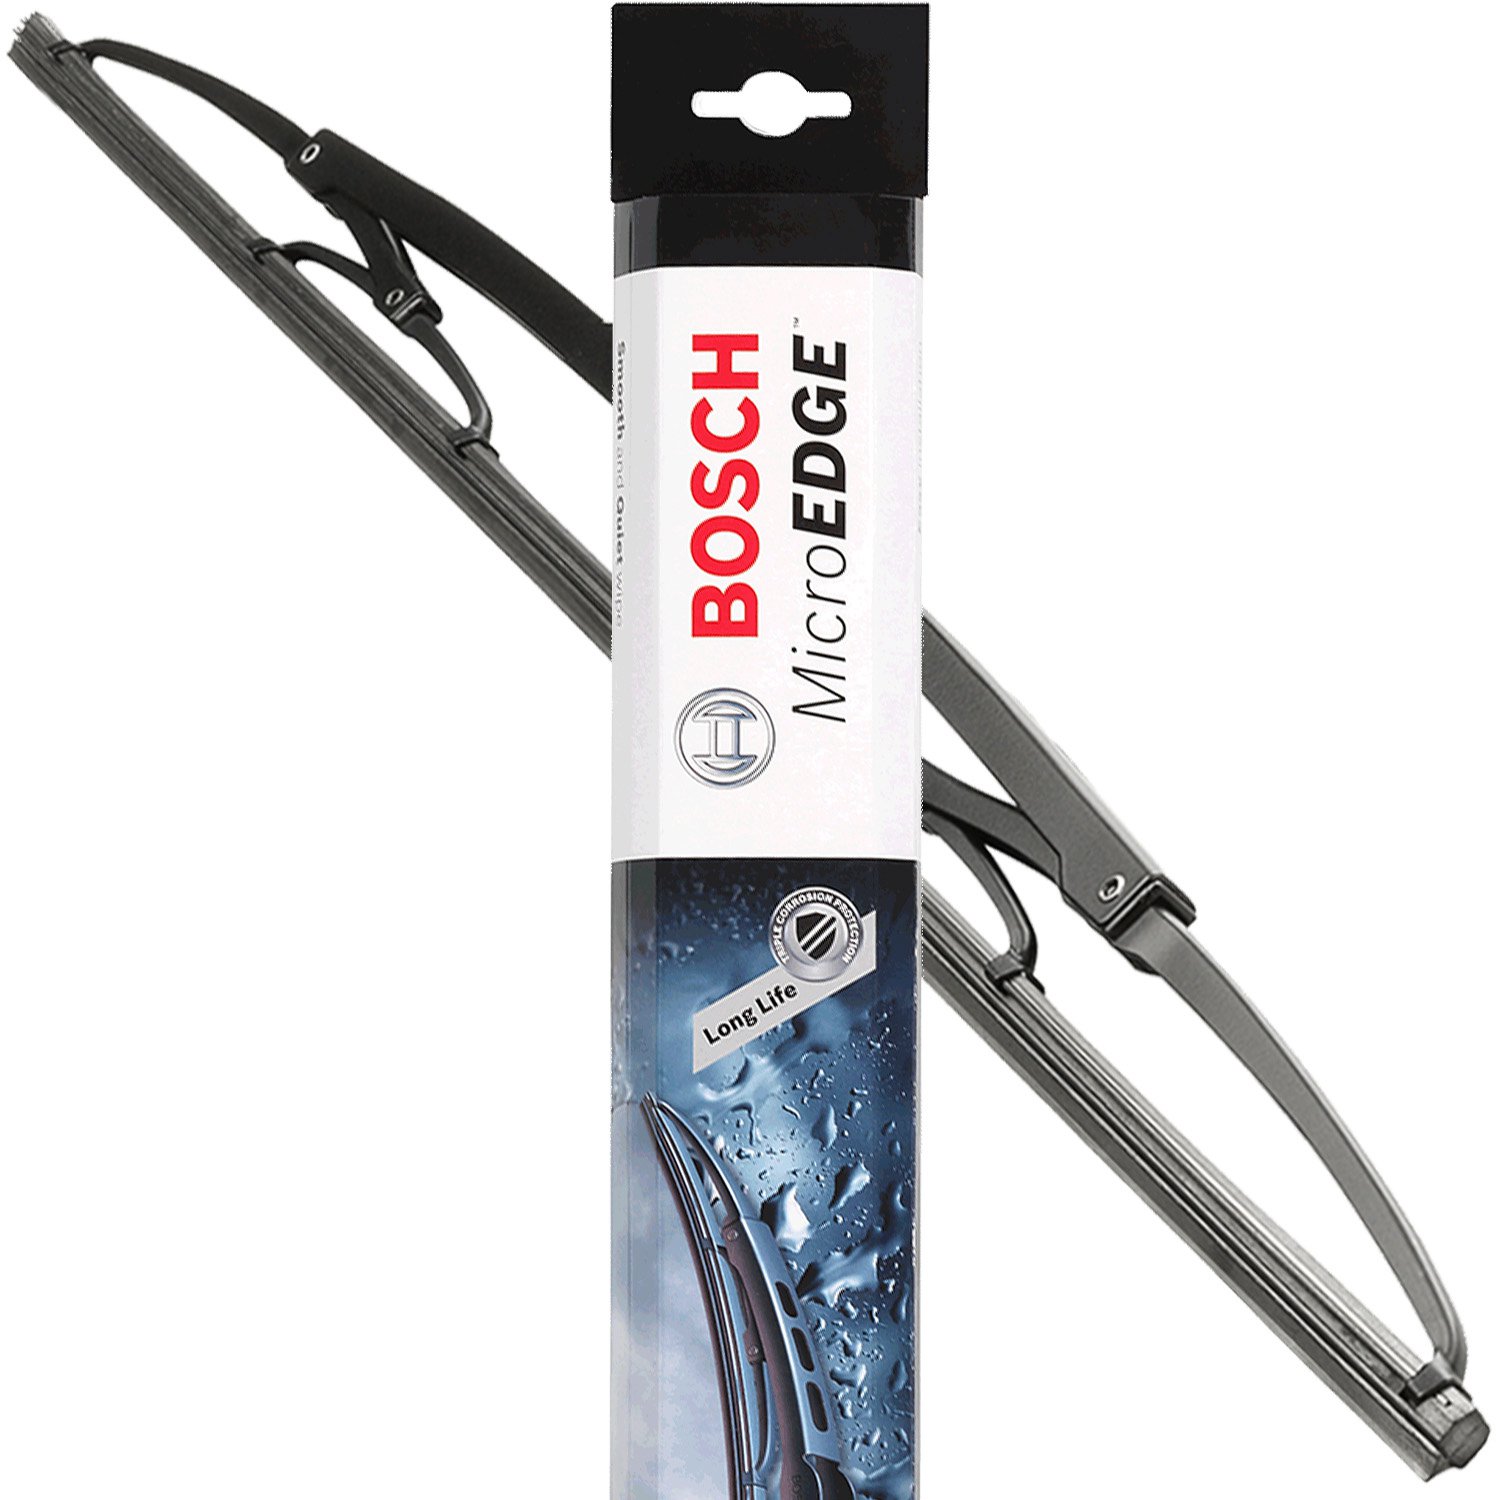 Bosch Wiper Blade Rebate Form